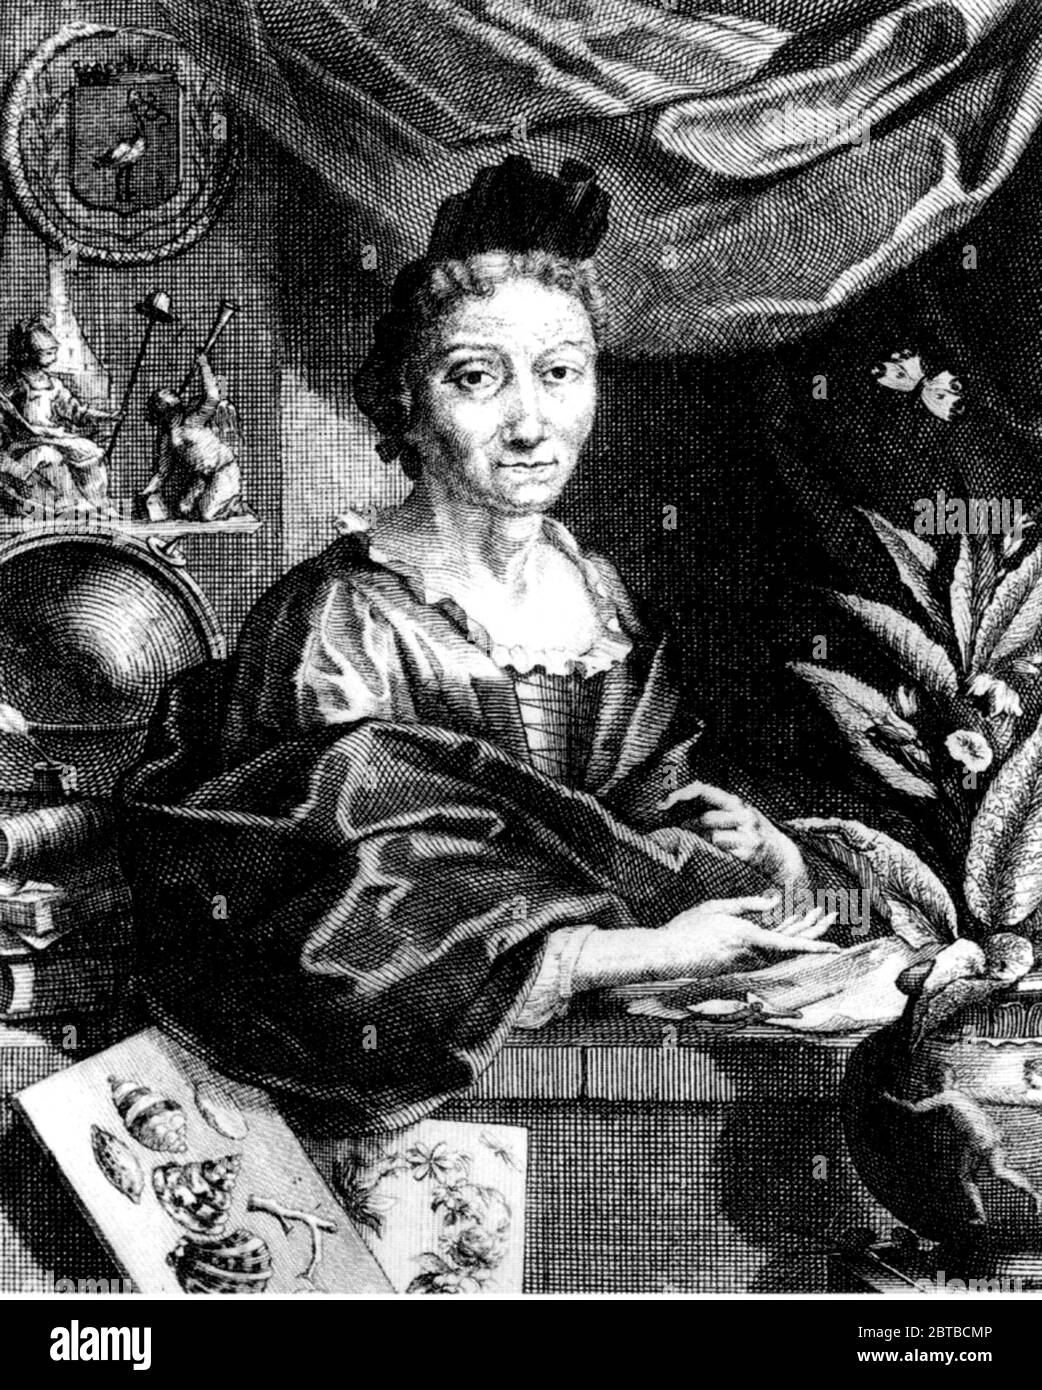 1700 C, GERMANIA : la pittrice naturalista tedesca, illustratrice scientifica e biologa MARIA SIBYLLA MERIAN ( 1647 - 1717 ). Il padre di Syblla era l'incisore e publisher svizzero Matthäus Merian ( Matteo , 1593 - 1650 ) il Vecchio . Ritratto di Jacobus Houbraken da un ritratto di Georg Gsell . - SYBILLA - STORIA - foto storica - ritratto - ritratto - NATURALISTA - NATURALISTA - SCIENZA - SCIENZA - BIOLOGIA - biologia - Illustratrice - illustratore - pittore - pittore - pittrice - pittura - ARTE - illustrazione - illustrazione - incisione Foto Stock